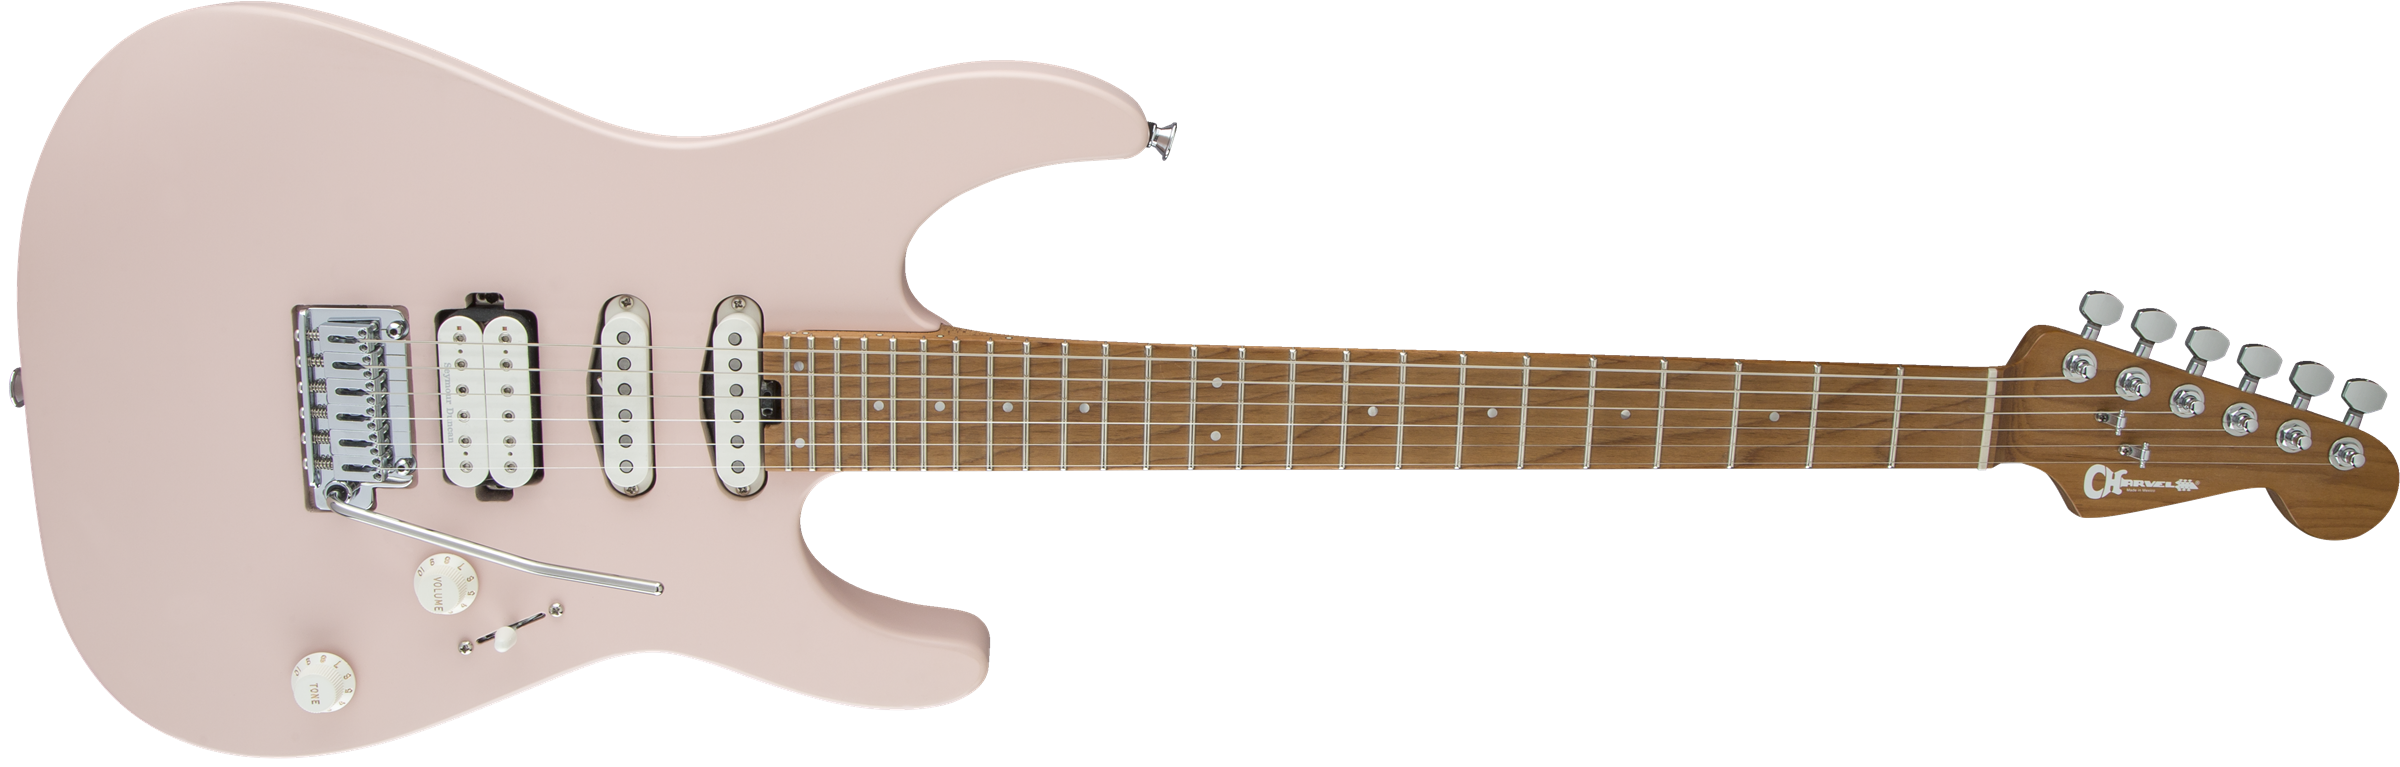 Charvel Pro-mod Dk24 Hss 2pt Cm Trem Mn - Satin Shell Pink - E-Gitarre in Str-Form - Variation 2